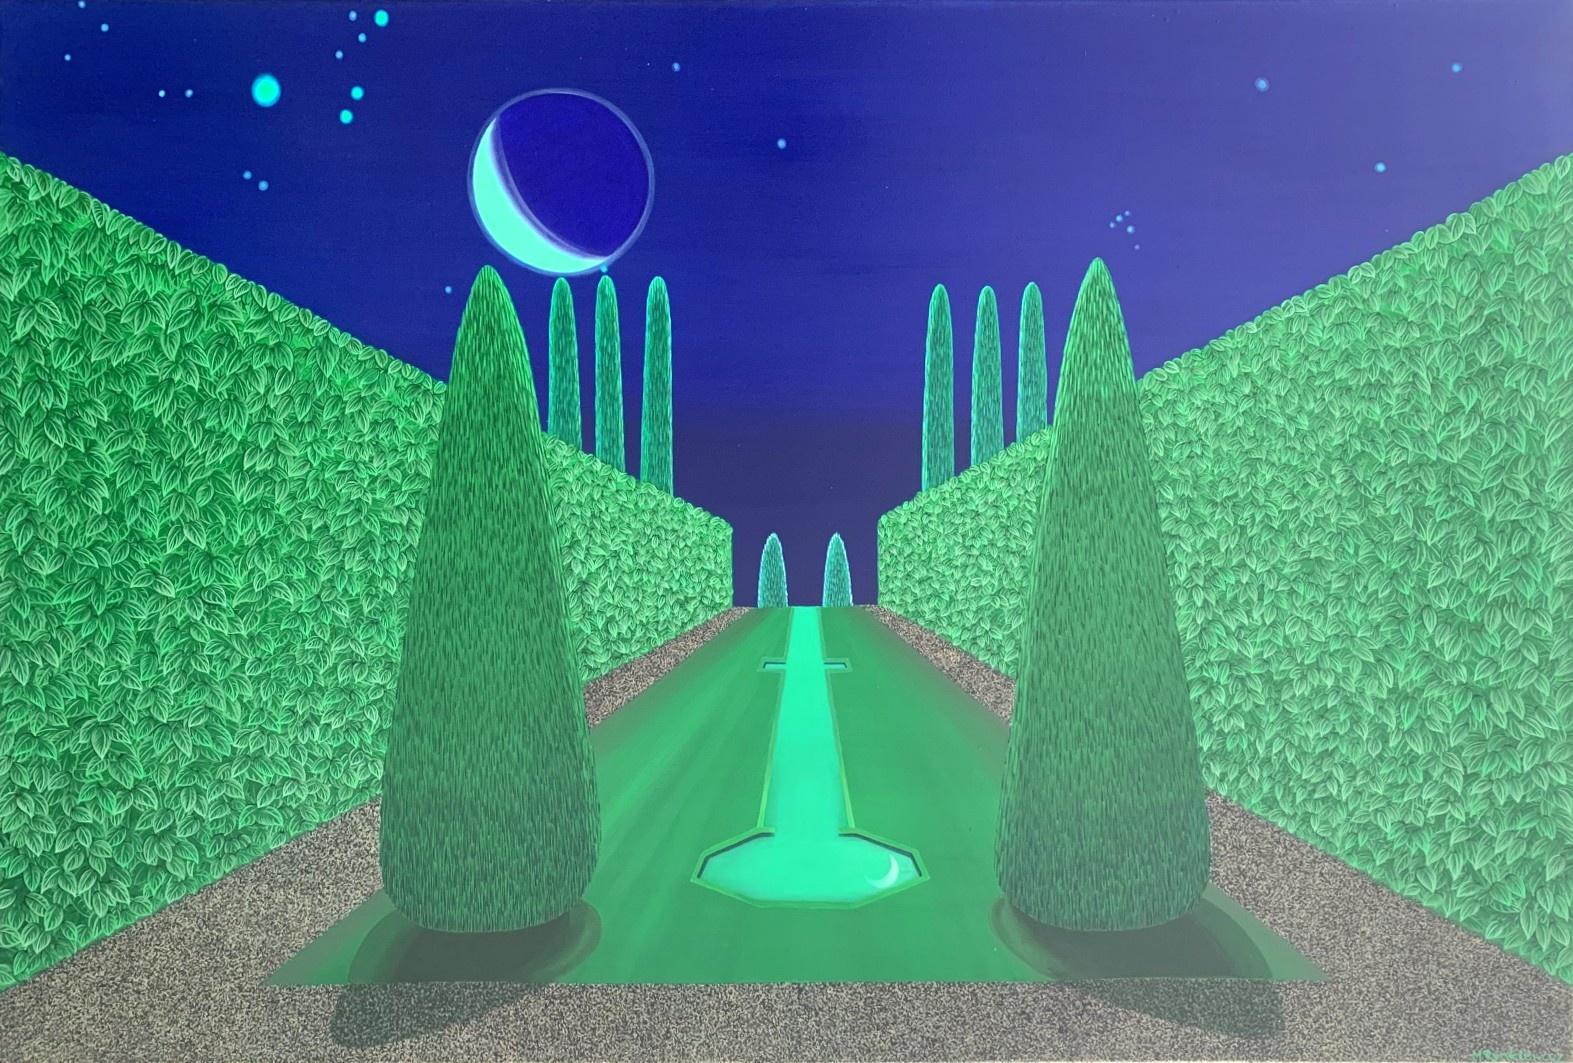 Himmelreicher Garten bei Nacht – Acrylmalerei, Pop-Art, lebhafte Farben, polnischer Künstler